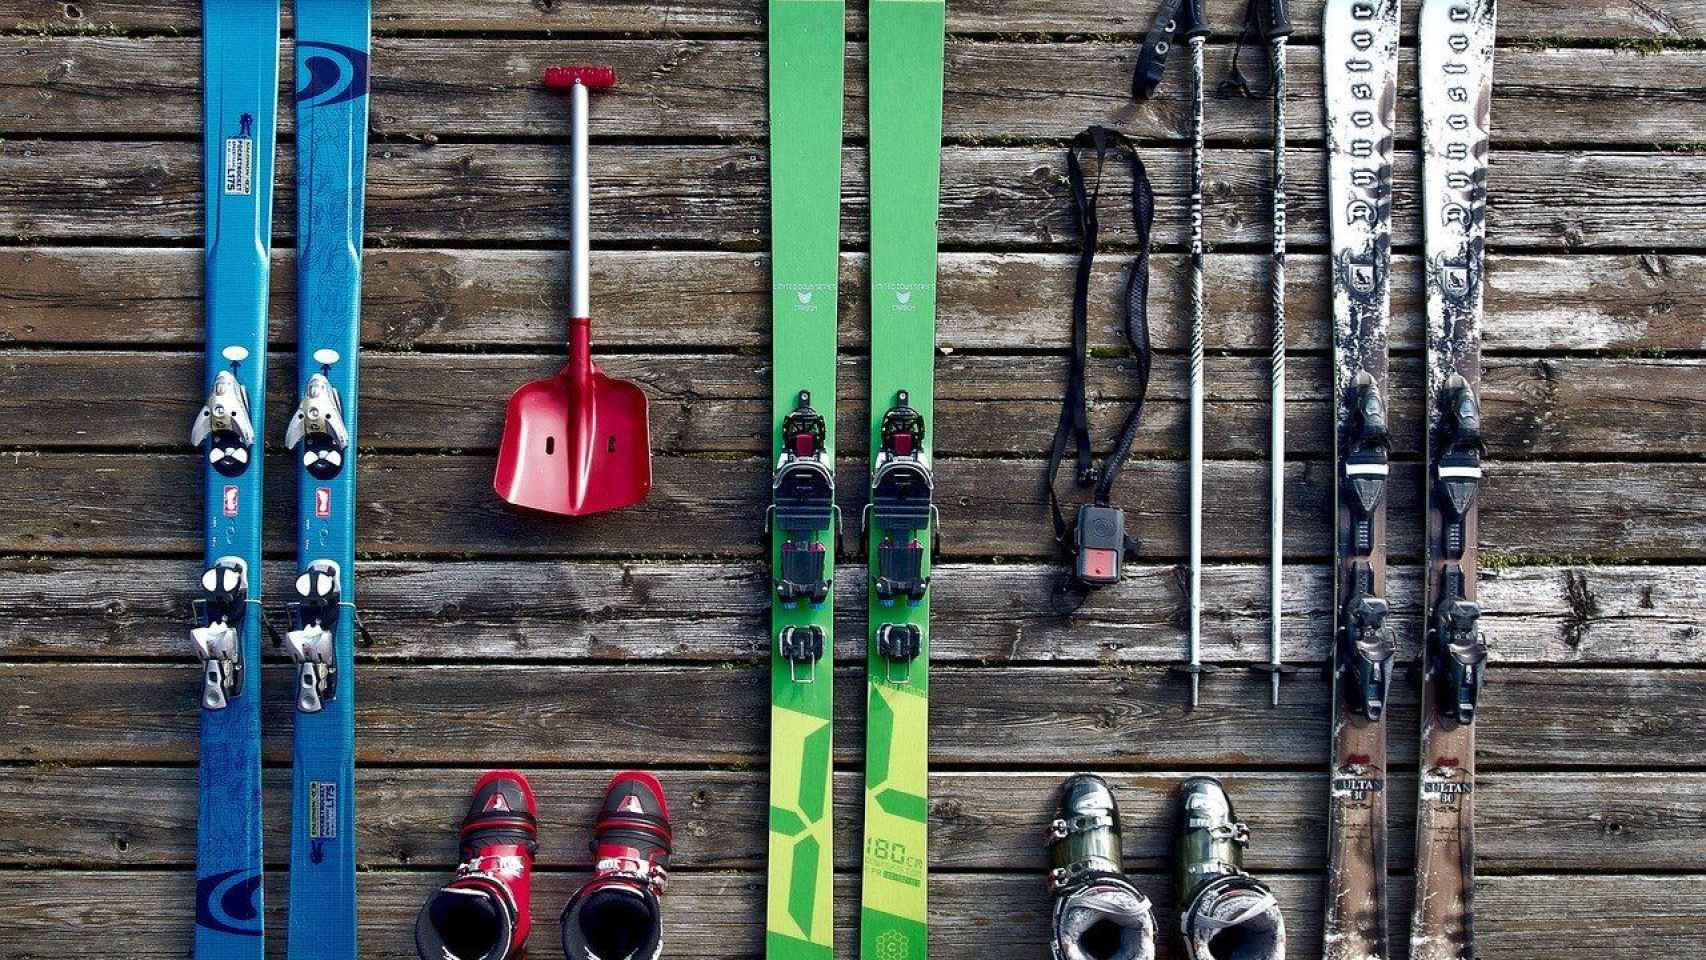 Productos de esquí que se pueden encontrar en una de estas tiendas / Tookapic - PIXABAY